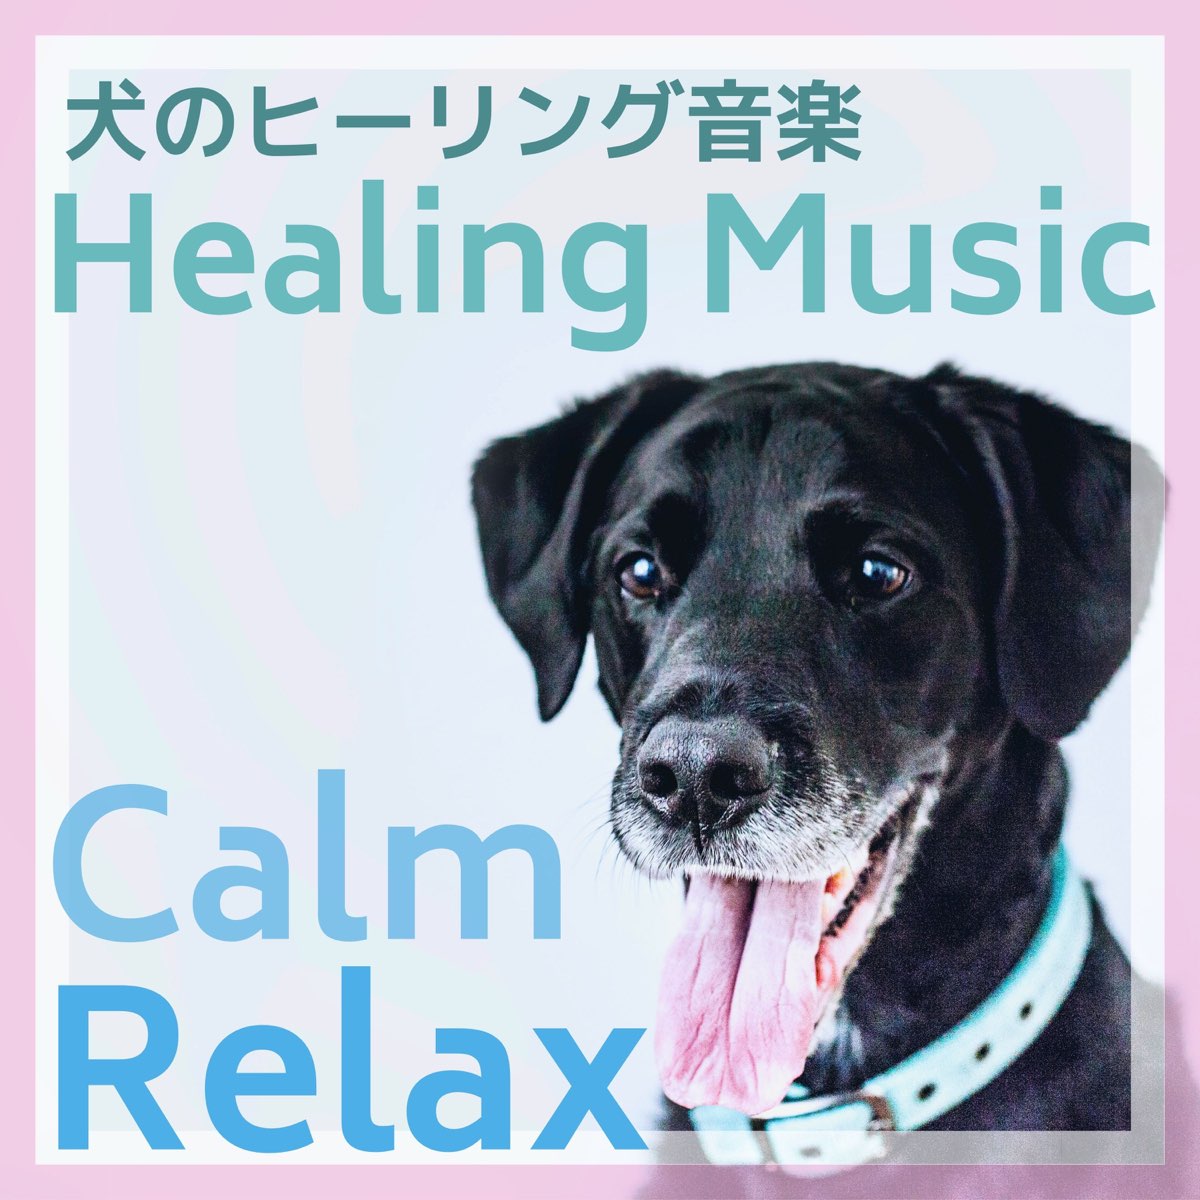 犬の鼓腹の 犬のヒーリング音楽 犬が落ち着く音楽 ストレスや不安を減らす留守番bgm をapple Musicで